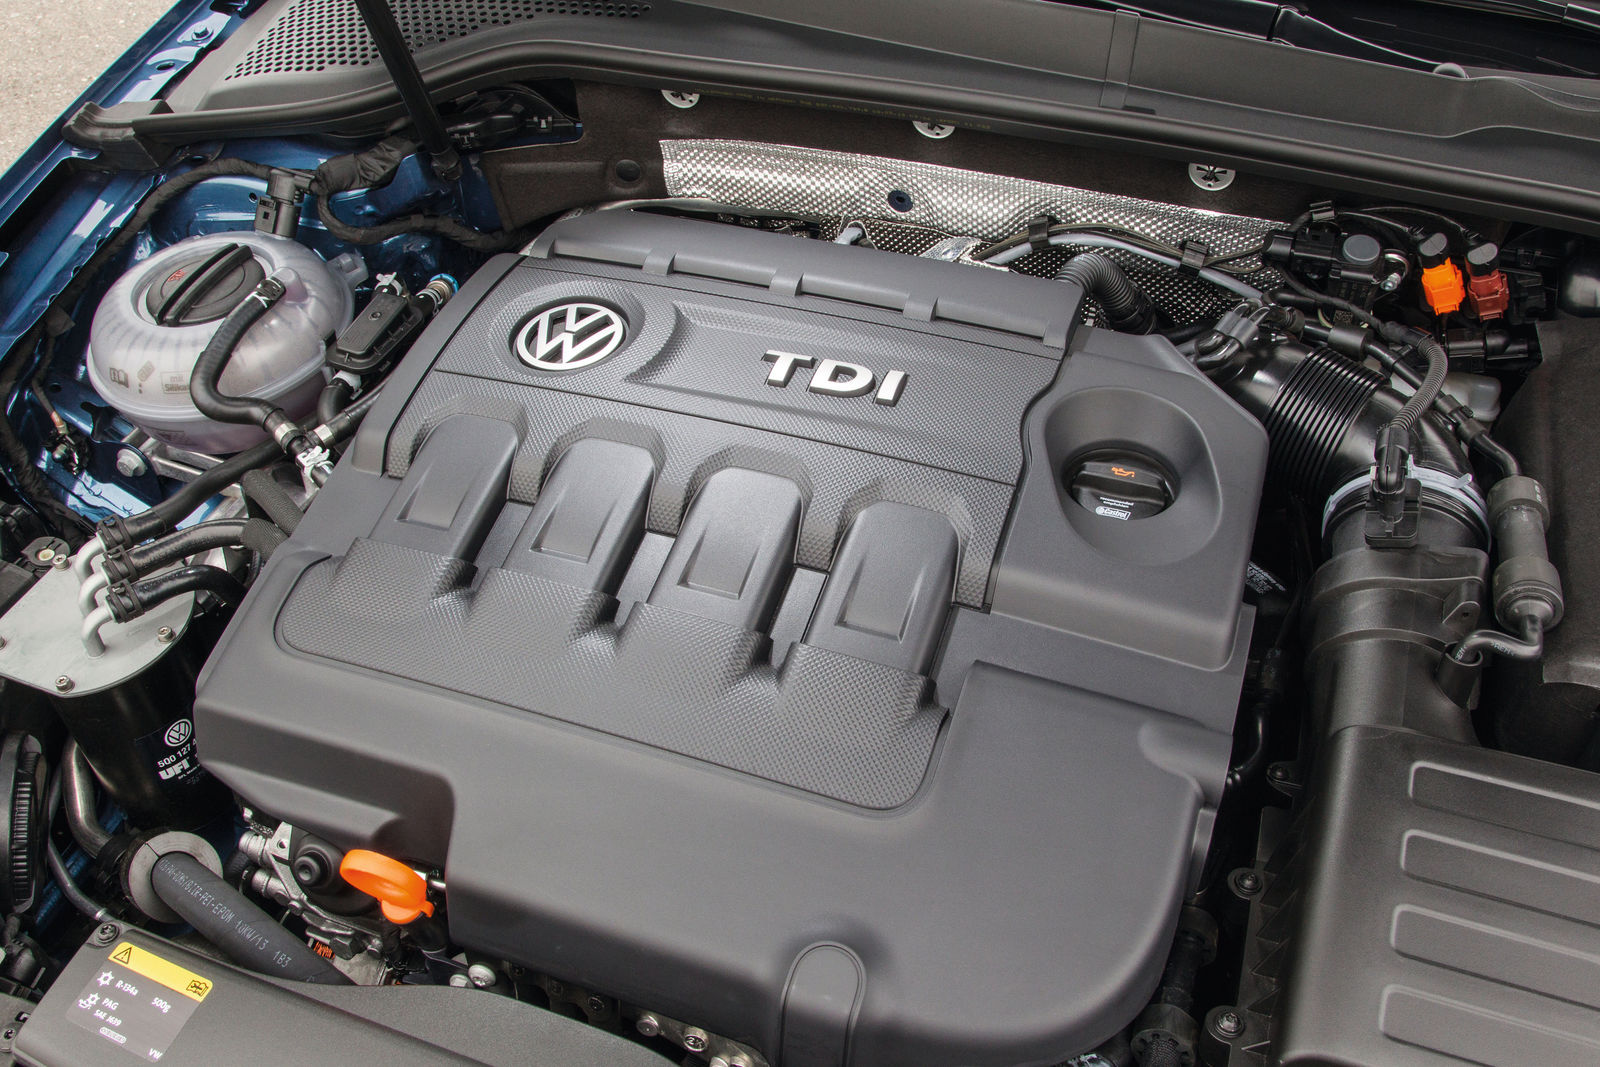 uitlijning Vervallen Kwalificatie The new Golf Estate - Engines and running gear | Volkswagen Newsroom